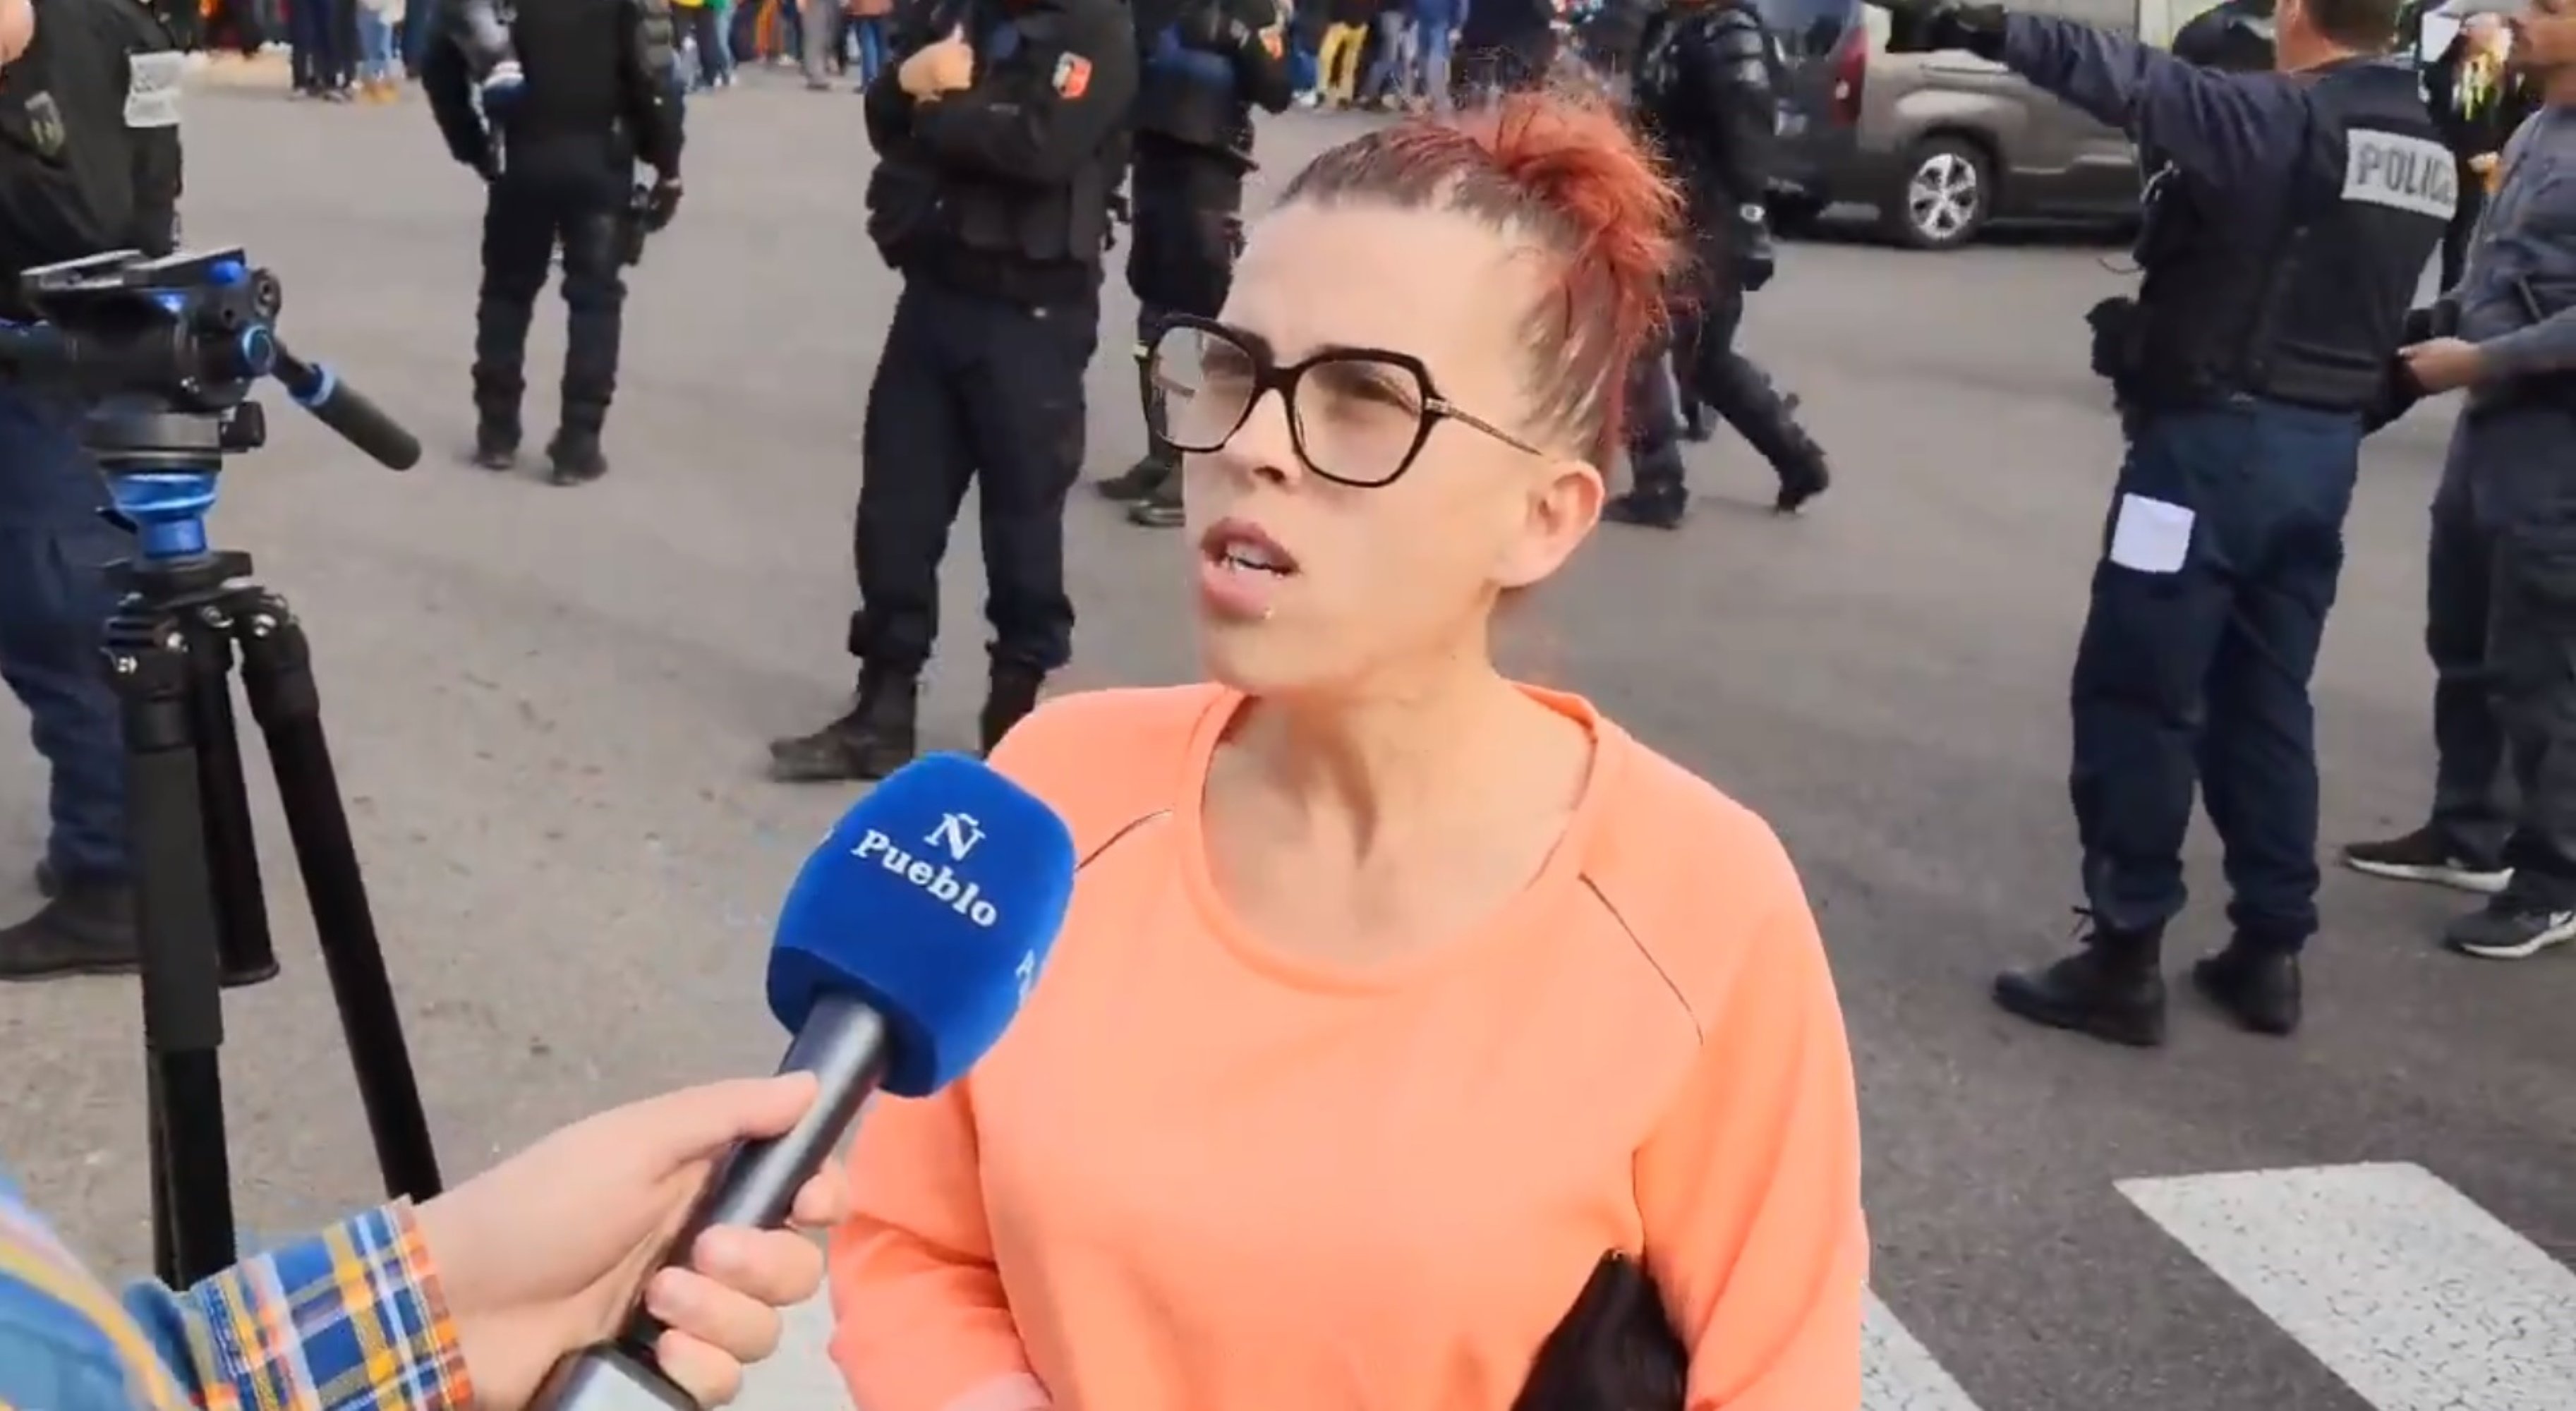 Ridícul viral: fan passar per francesa una dona que critica els indepes però l'accent la delata